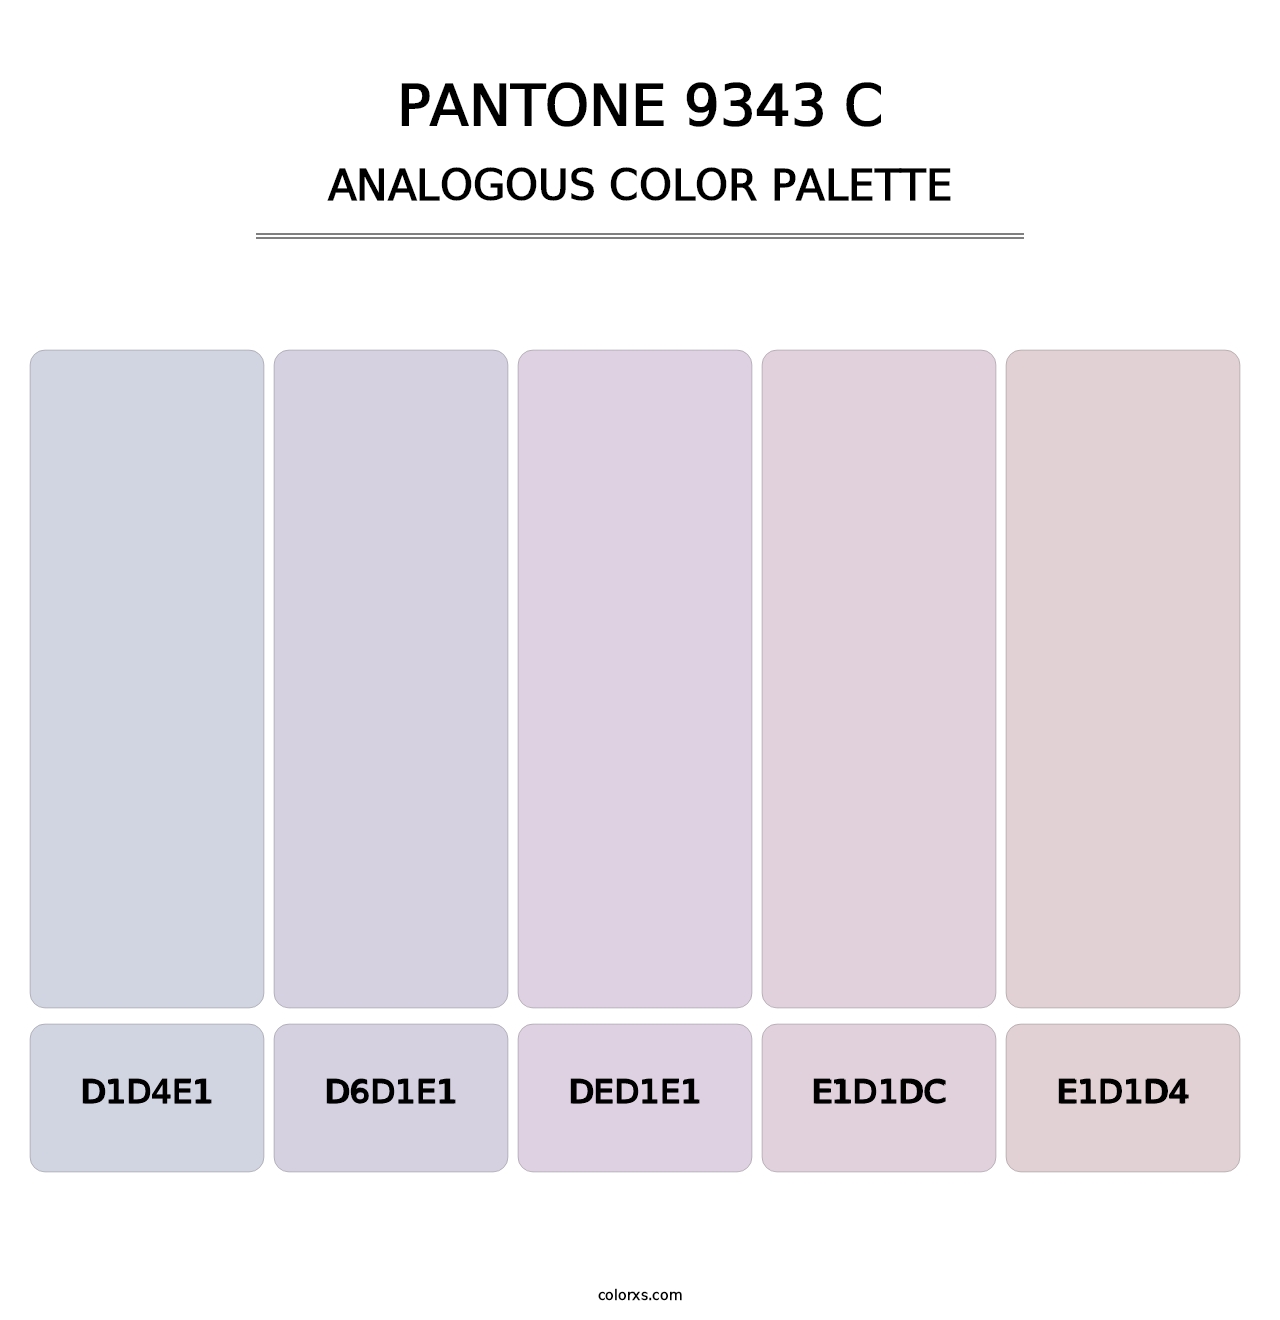 PANTONE 9343 C - Analogous Color Palette